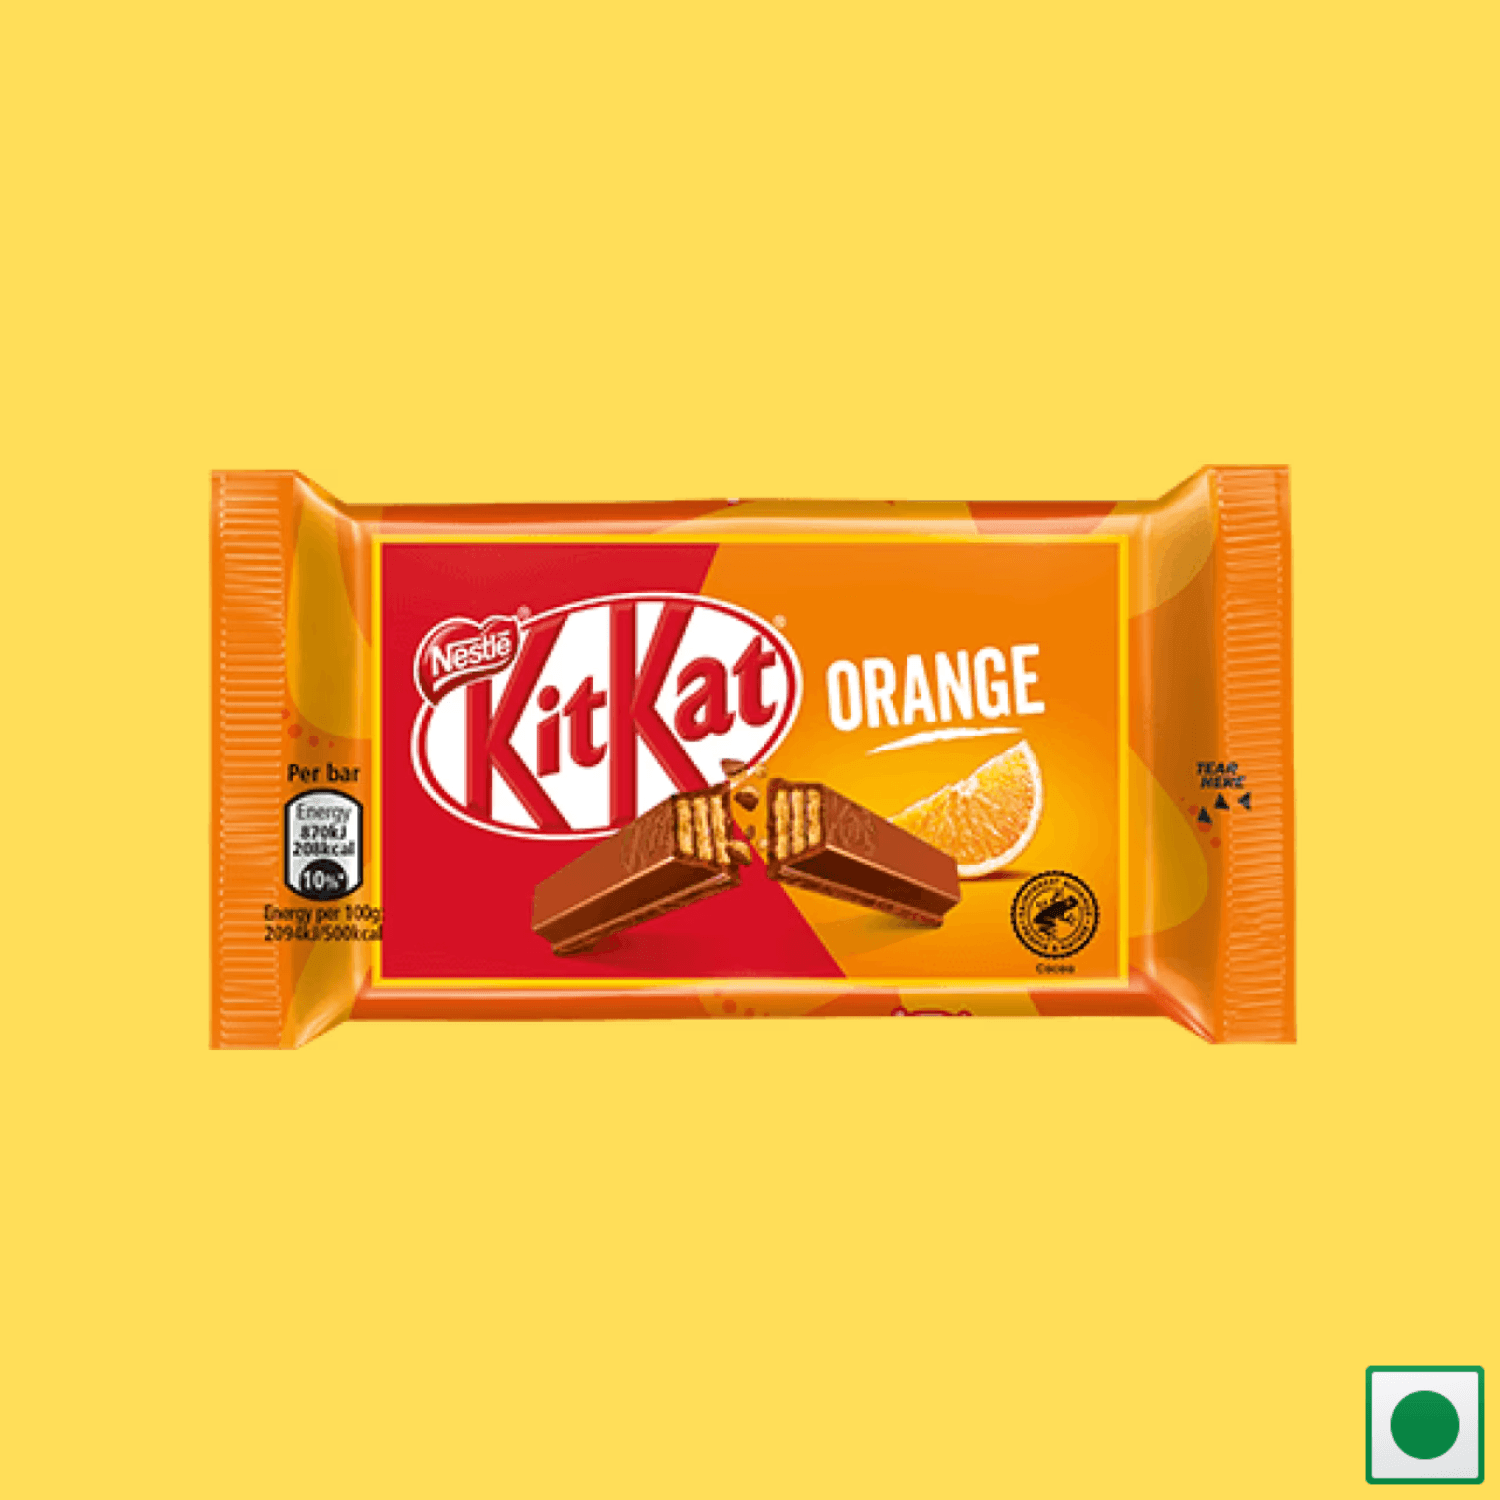 KitKat 4 Finger Orange, 41.5g (Imported) - Super 7 Mart